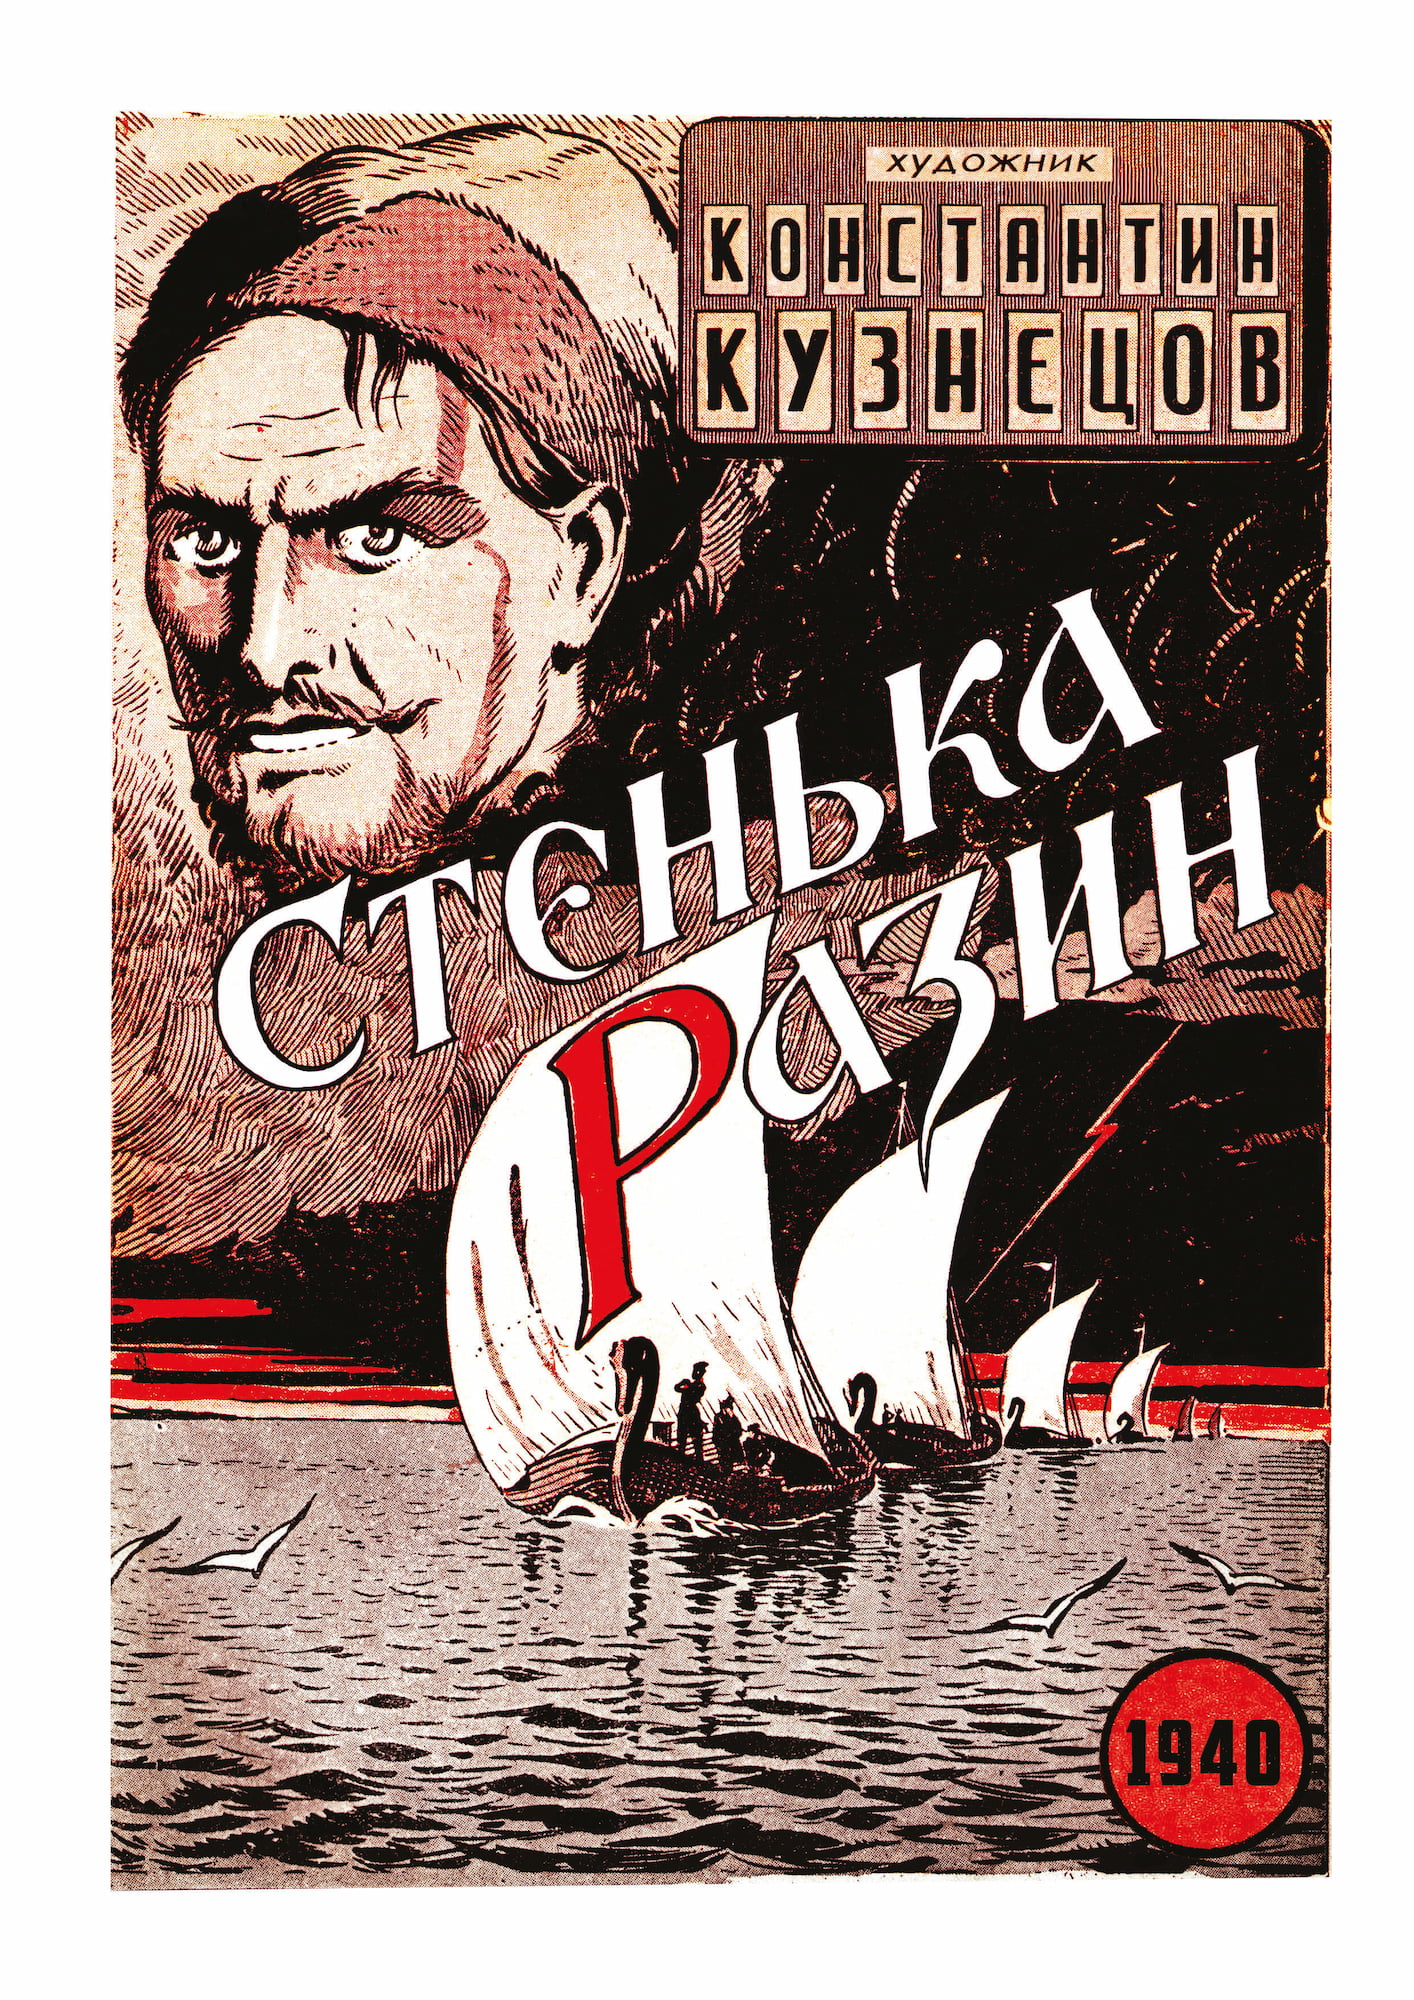 Русский комикс 1935-1945 Королевство Югославия